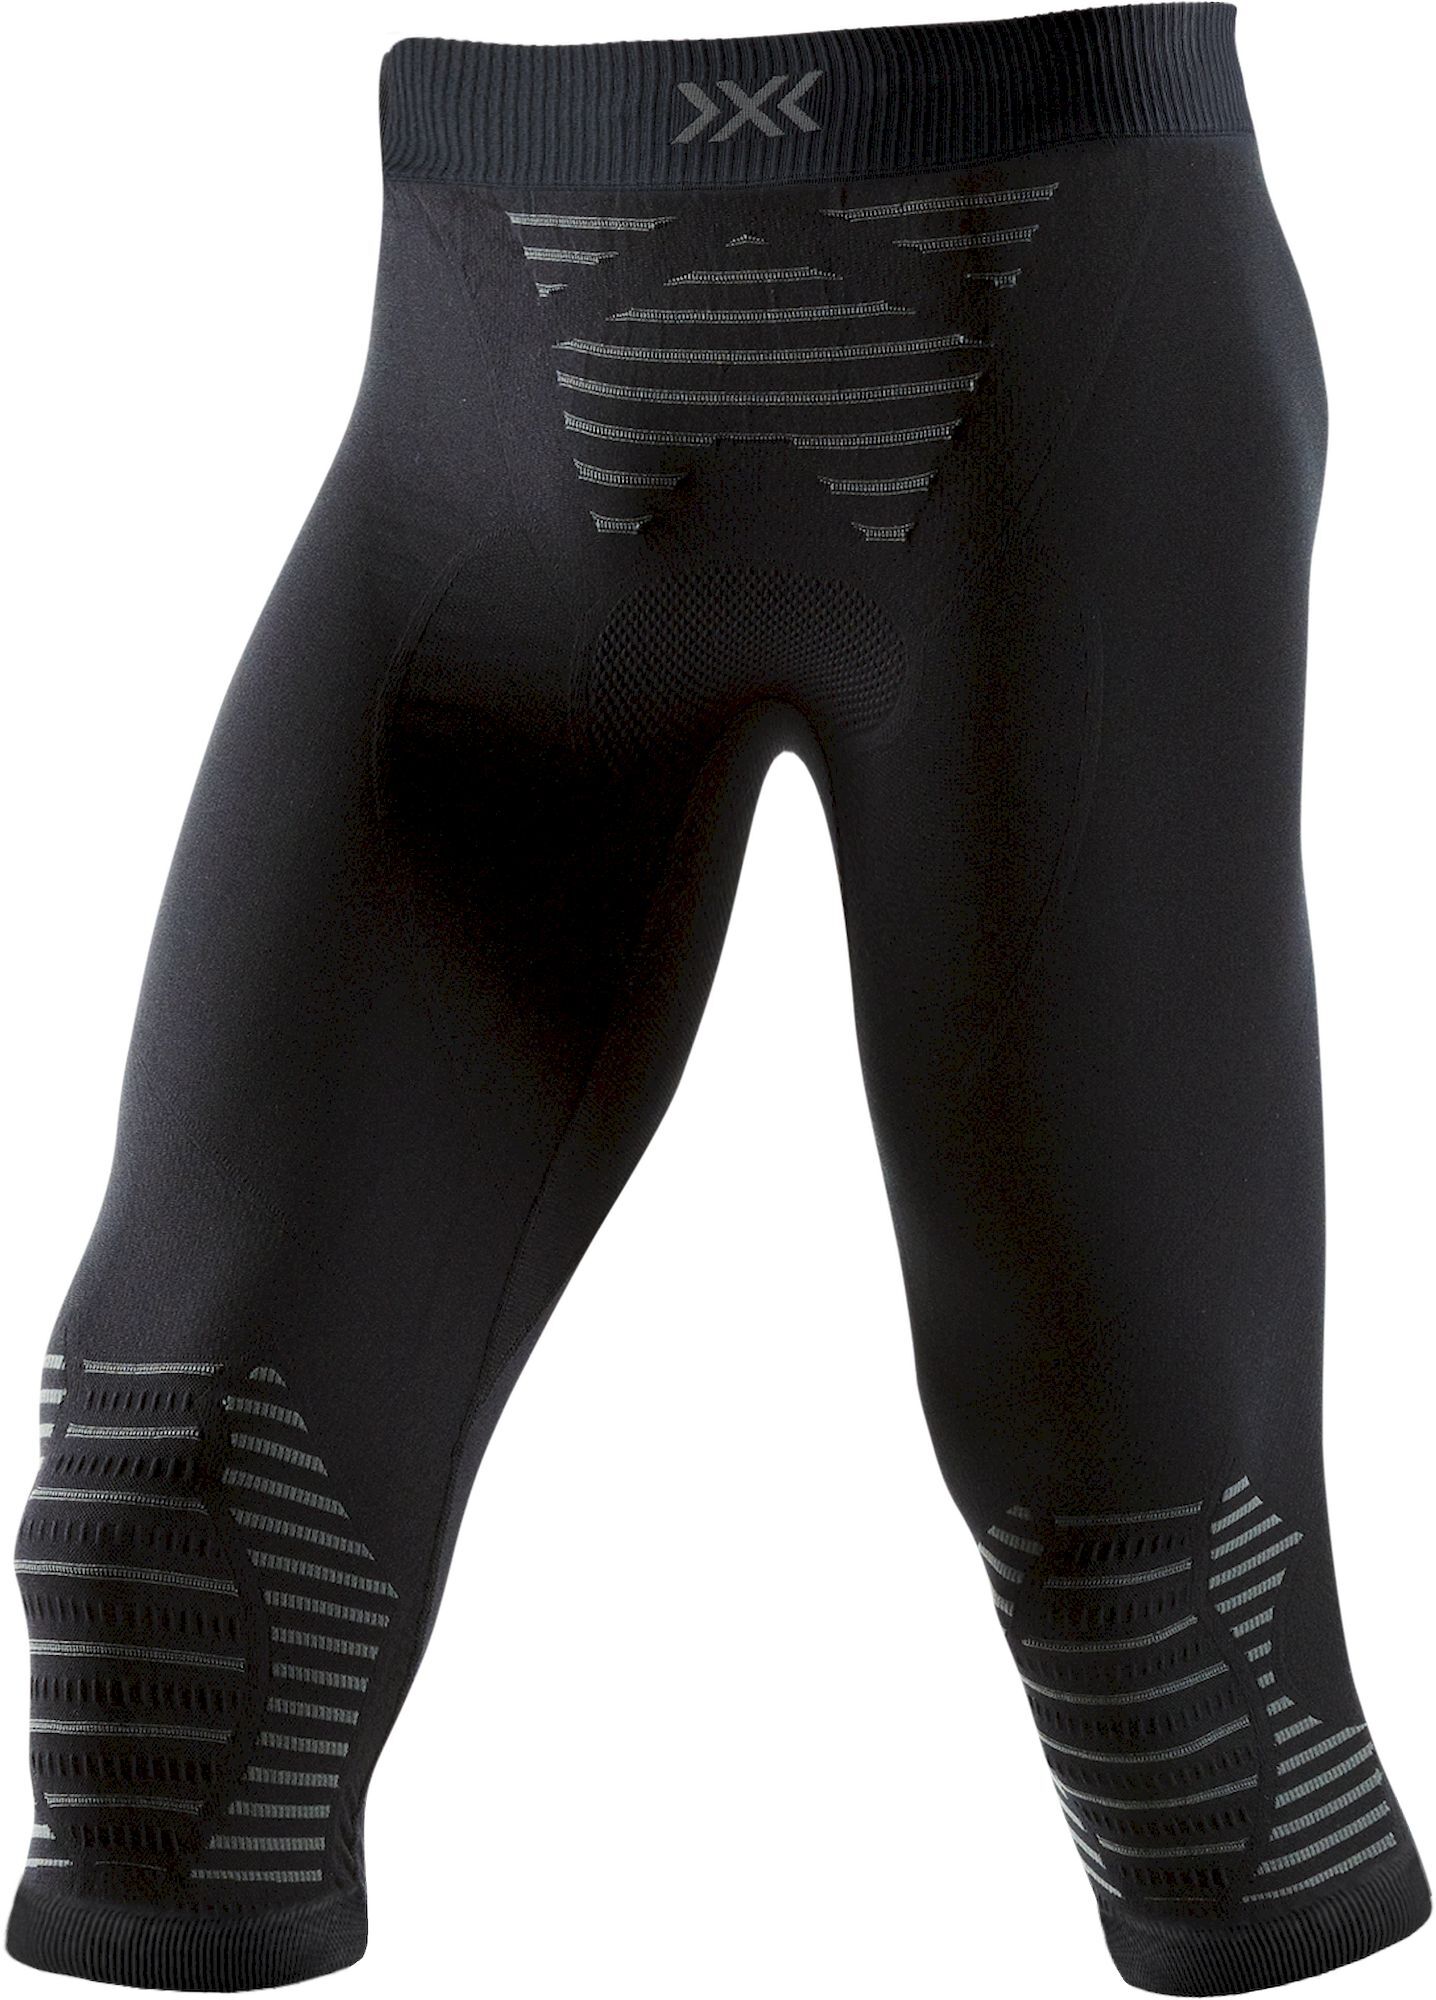 X-Bionic Invent 4.0 Pants 3/4 - Collant thermique homme